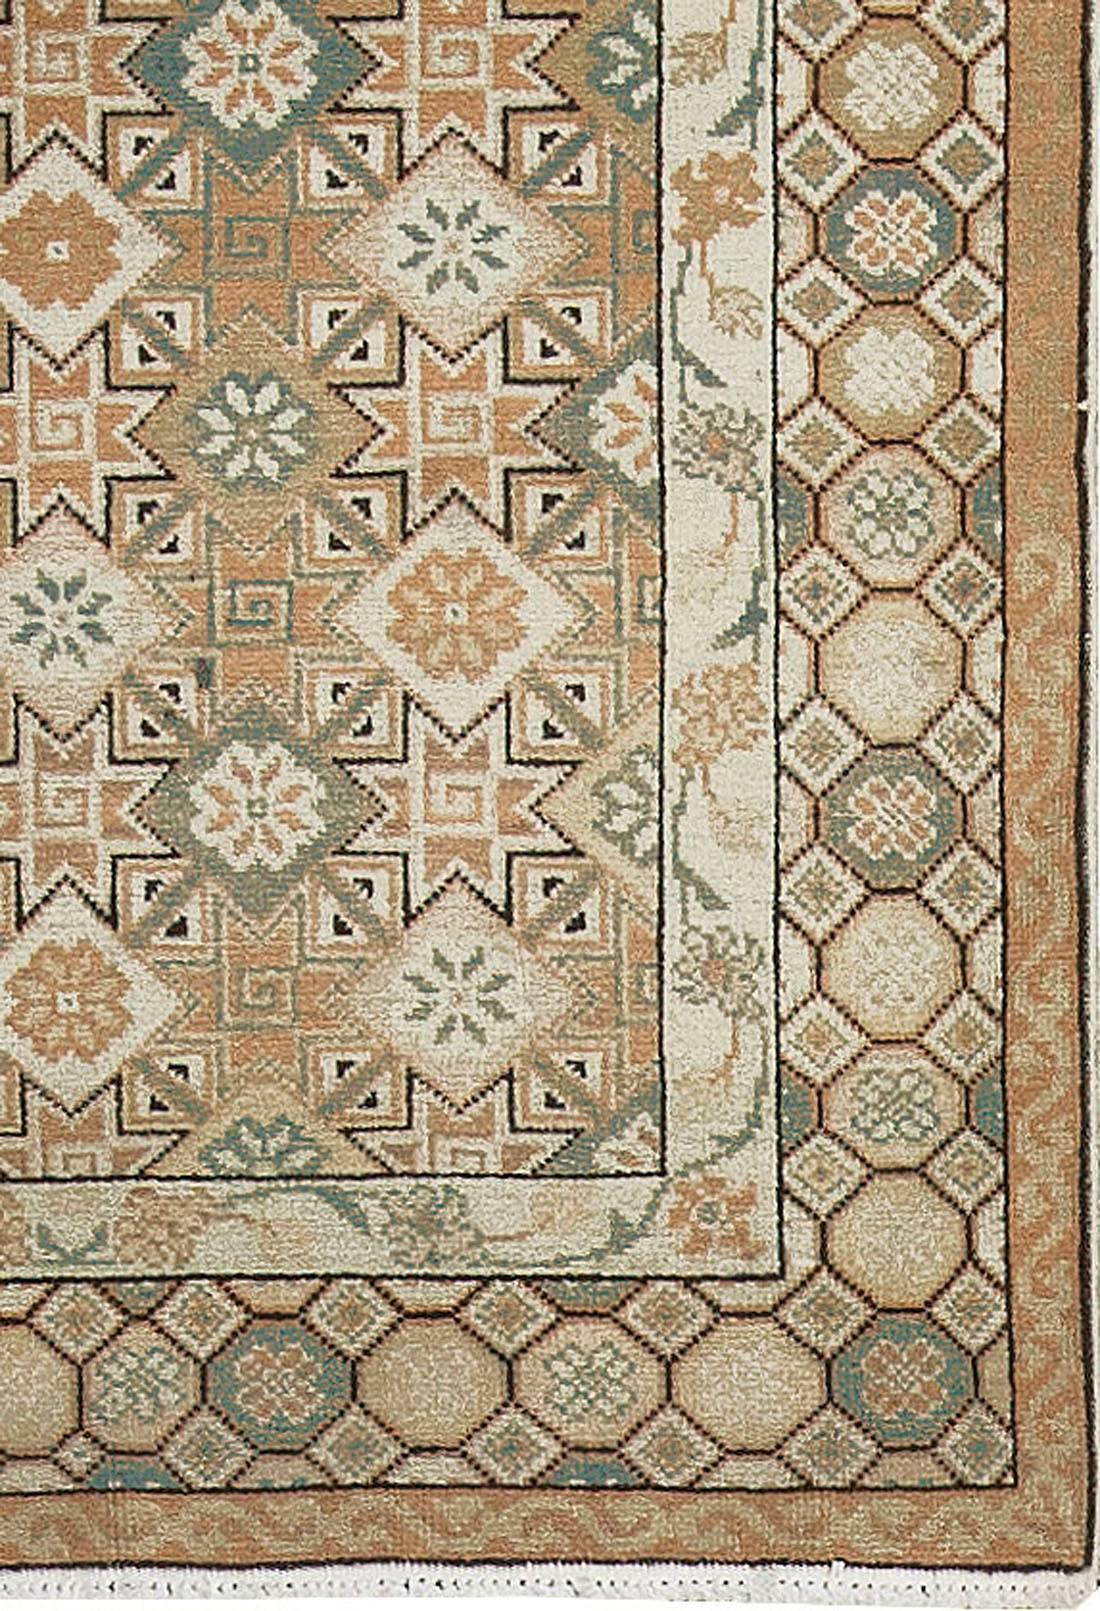 Seit dem Osmanischen Reich werden in Rumänien Teppiche gewebt, aber erst seit Mitte des 20. Jahrhunderts wird die Produktion exportiert. Die Designs basieren in der Regel auf alten persischen Mustern, obwohl in letzter Zeit auch moderne Stile gewebt